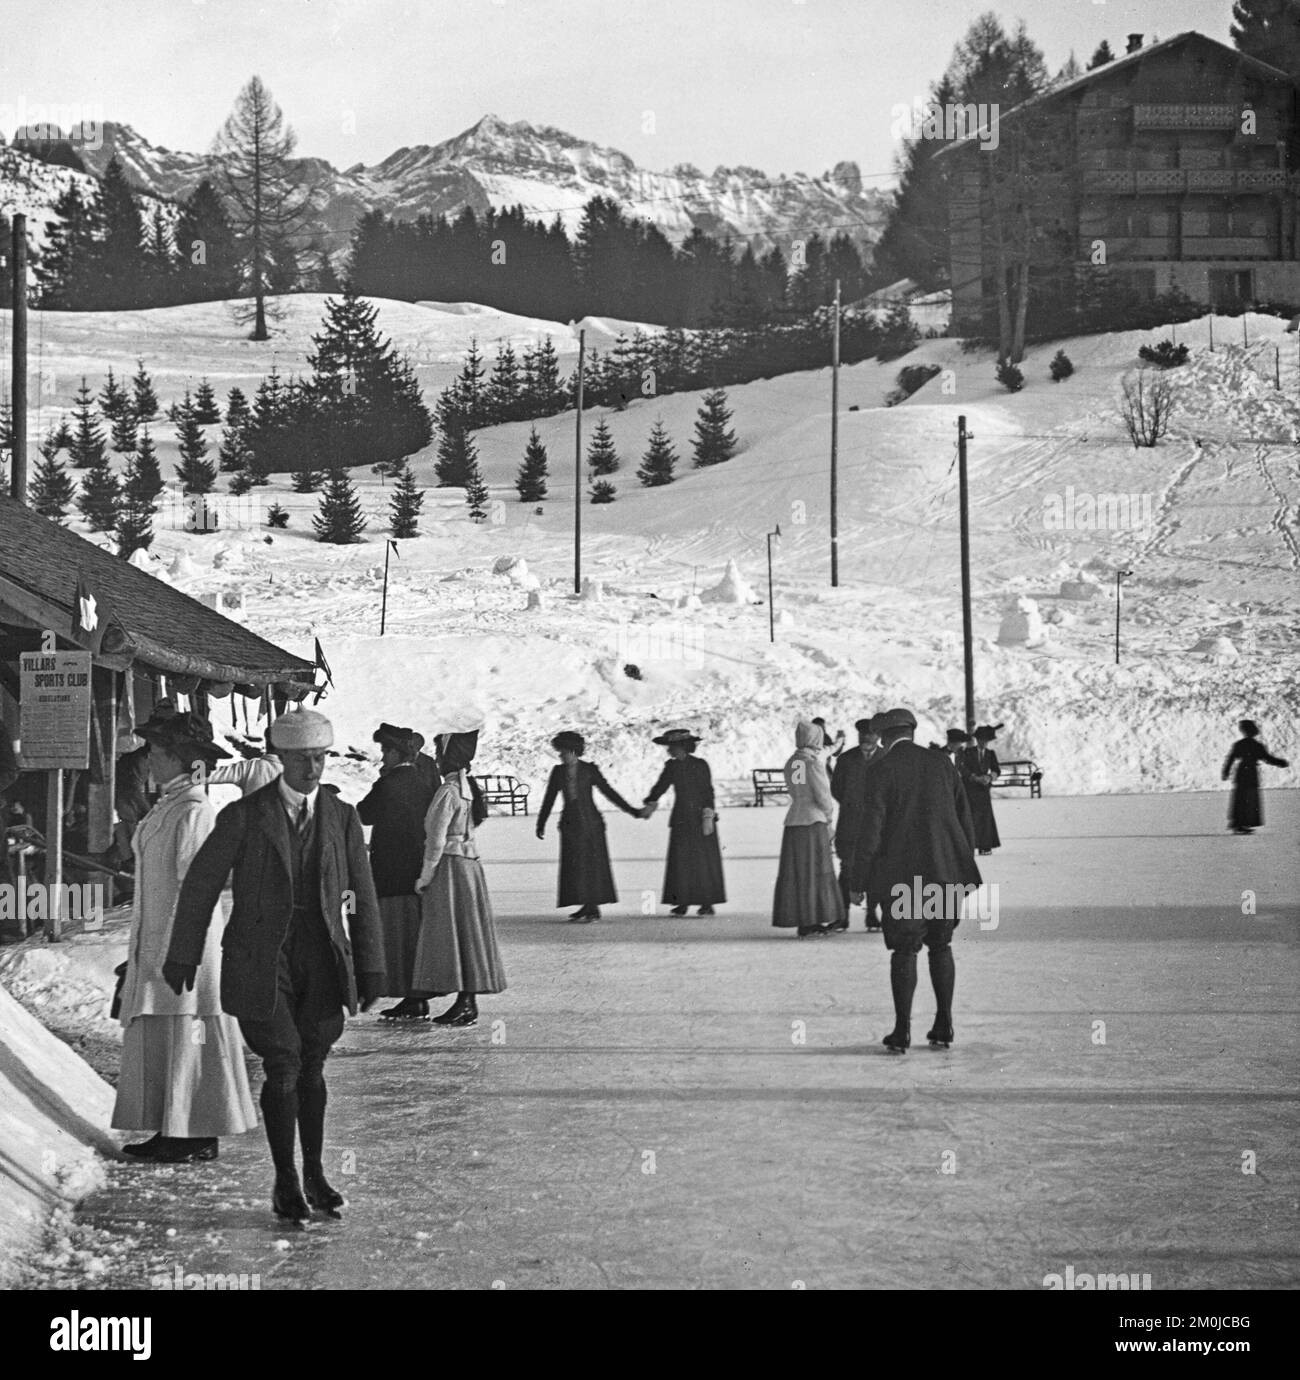 Una fotografia vintage in bianco e nero dei primi anni del 20th, scattata a Sass-Fee in Svizzera, mostra un certo numero di persone che pattinano su una pista di pattinaggio all'aperto. Un cartello per il Villars Sports Club sulla sinistra. Foto Stock